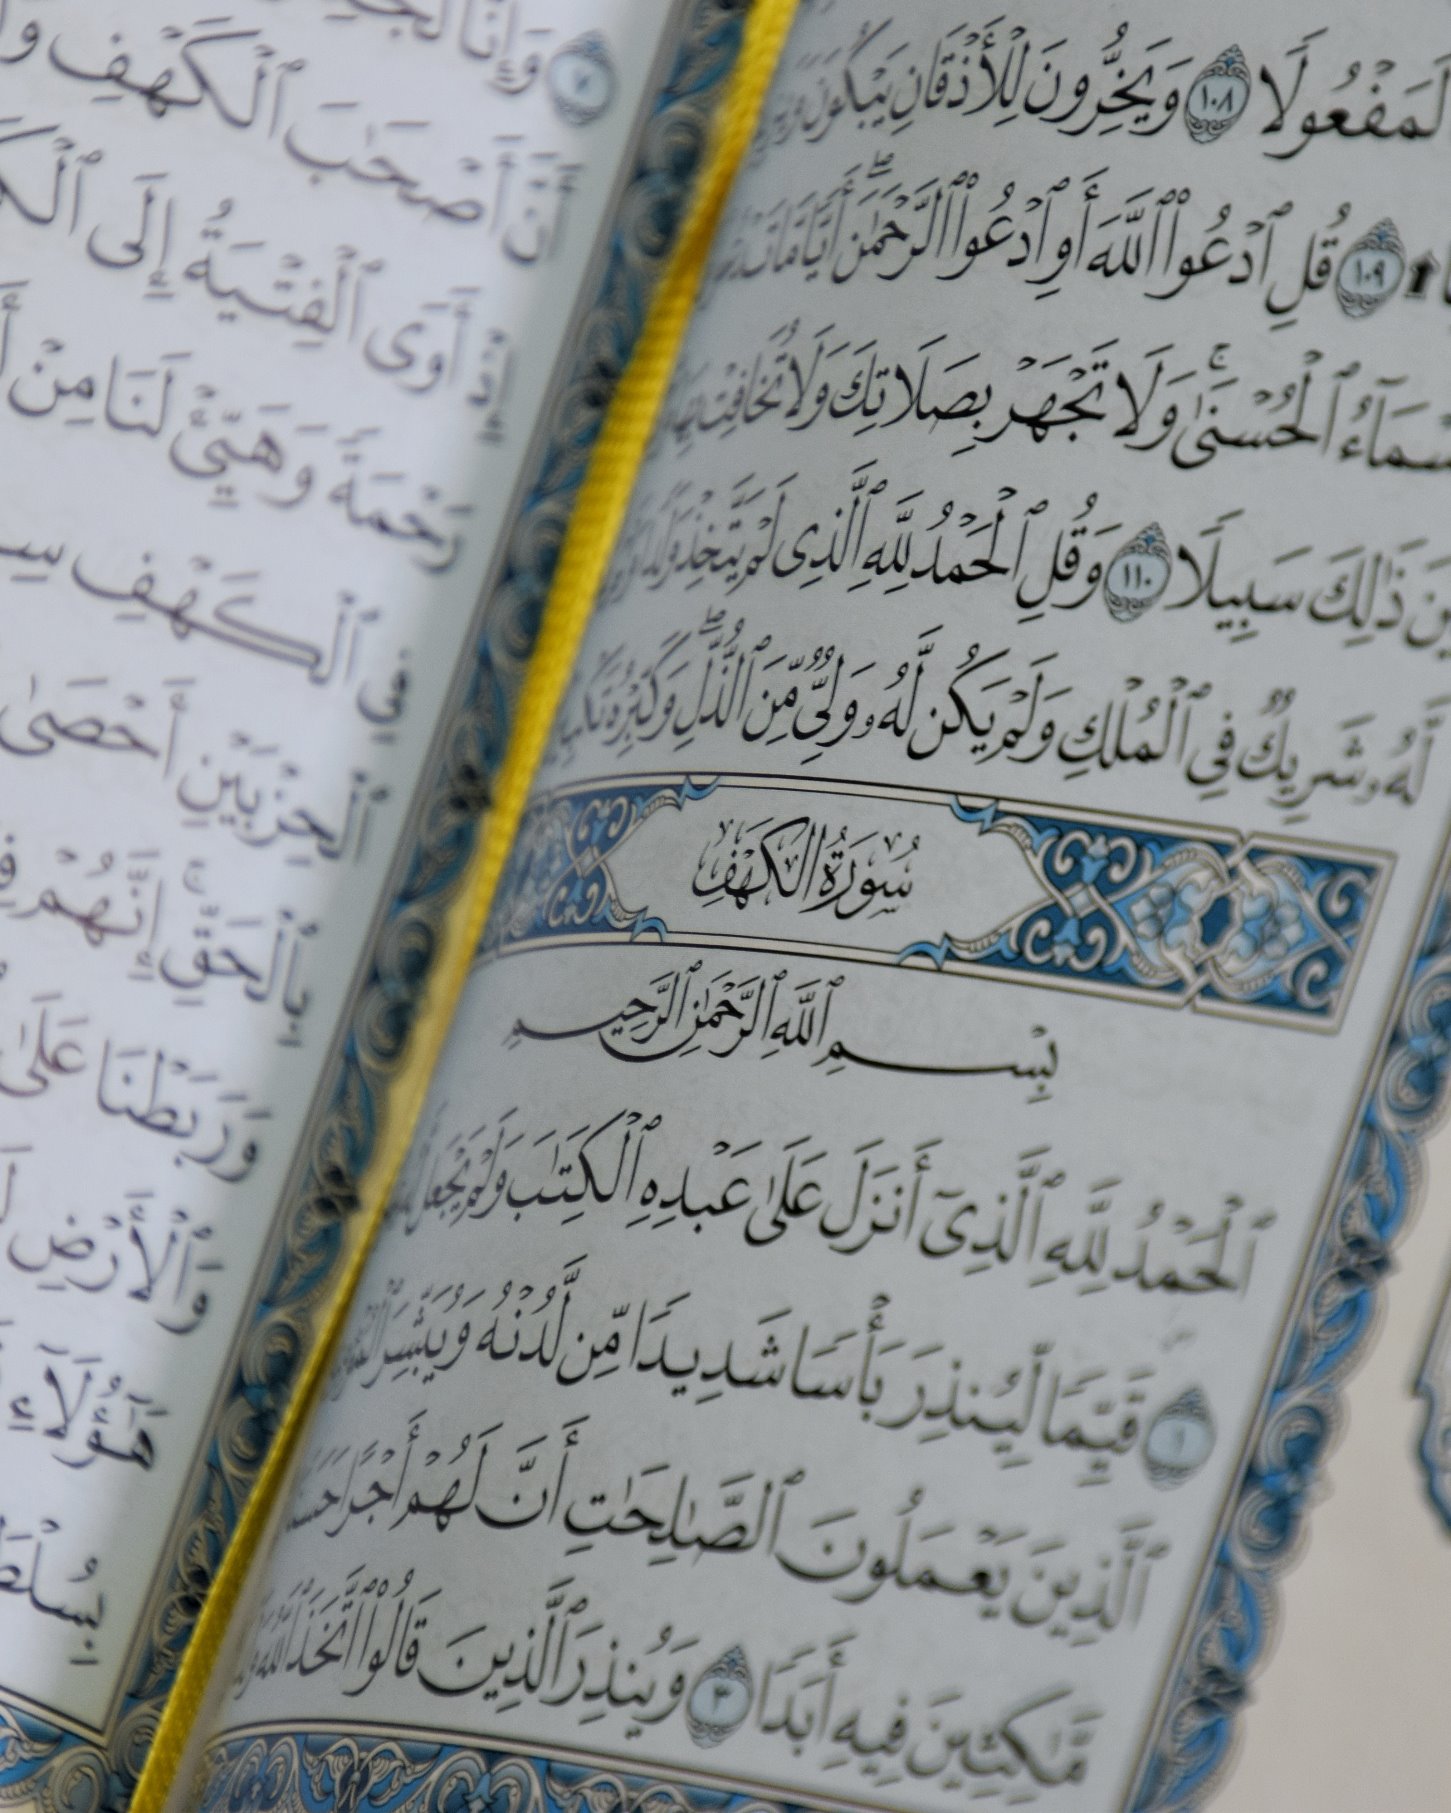 Quran text